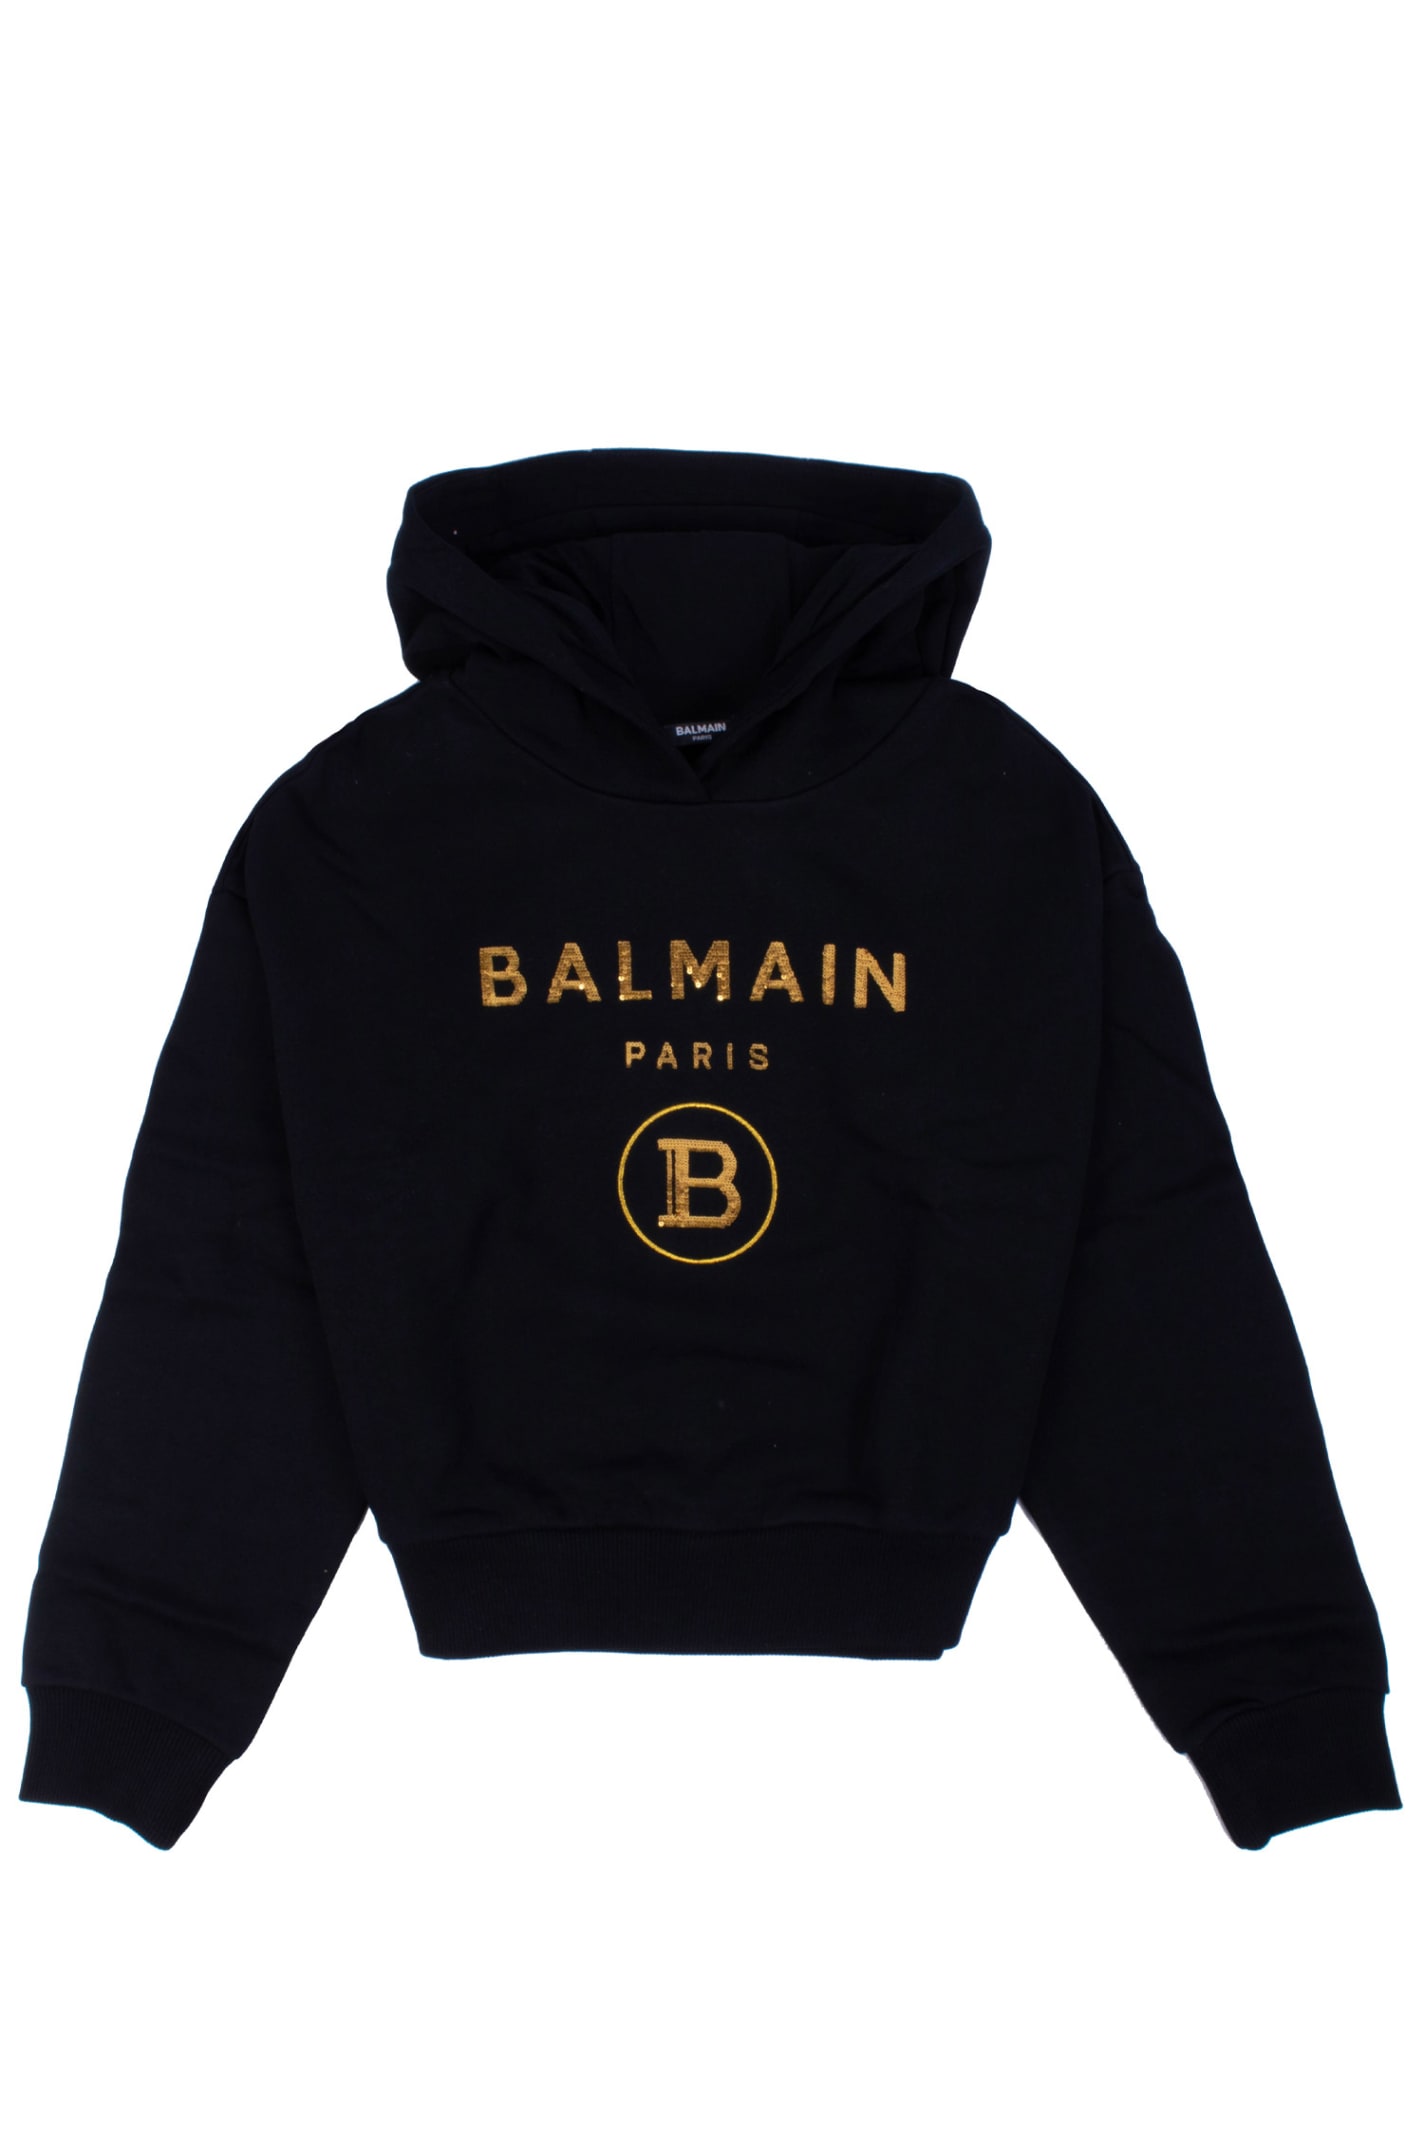 Balmain Cotton Sweatshirt With Hood